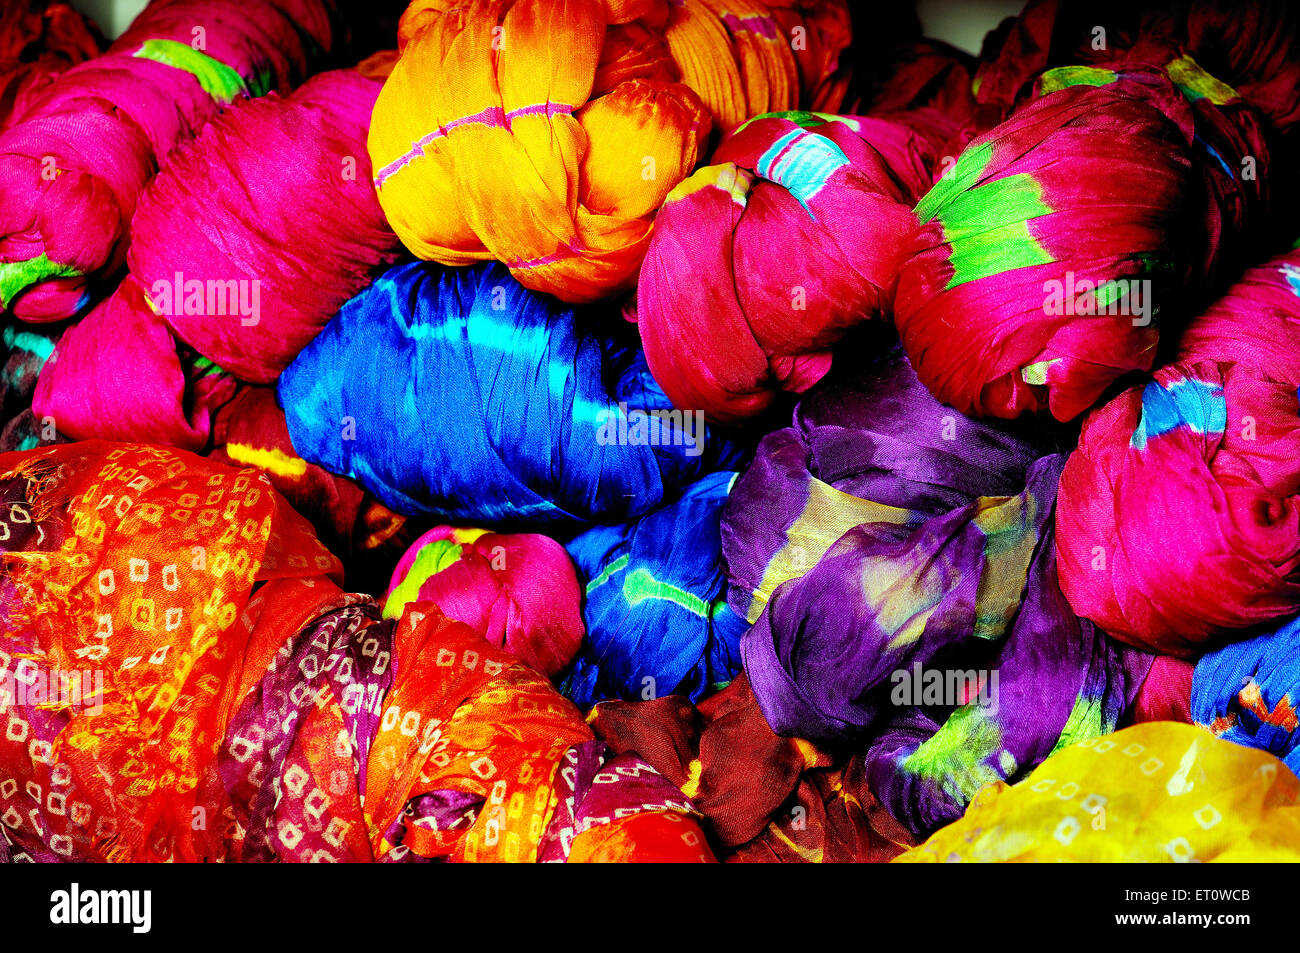 Rajasthani bandhej textiles ; Rajasthan ; India Stock Photo